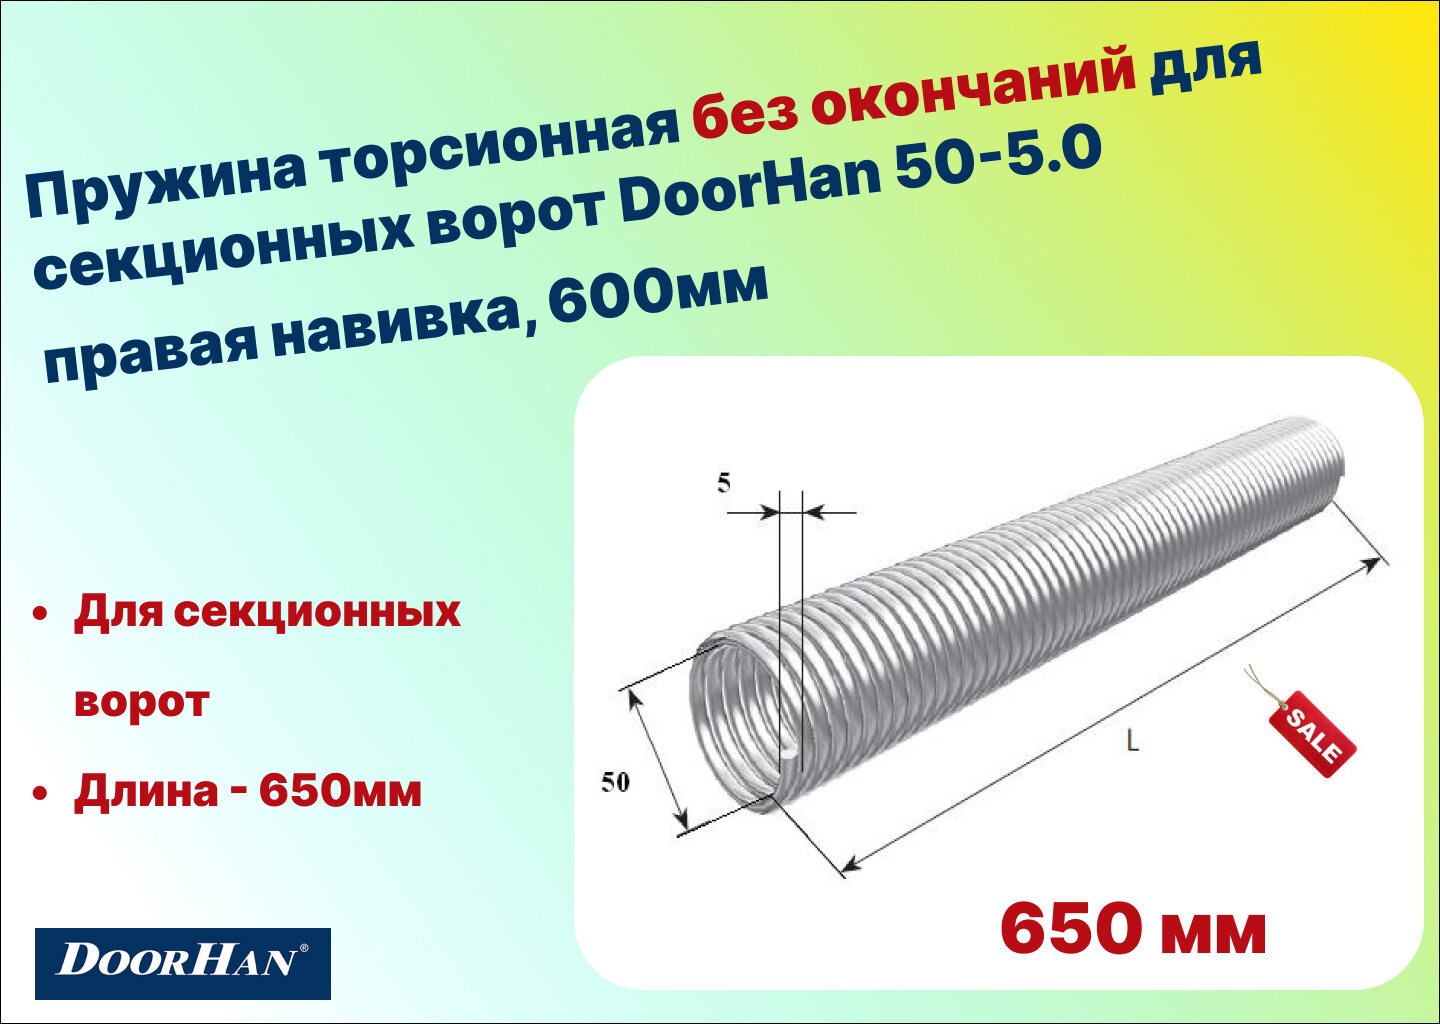 Пружина торсионная без окончаний для секционных ворот DoorHan 50-5.0 правая навивка, длина 650 мм (32050/mR/RAL7004)